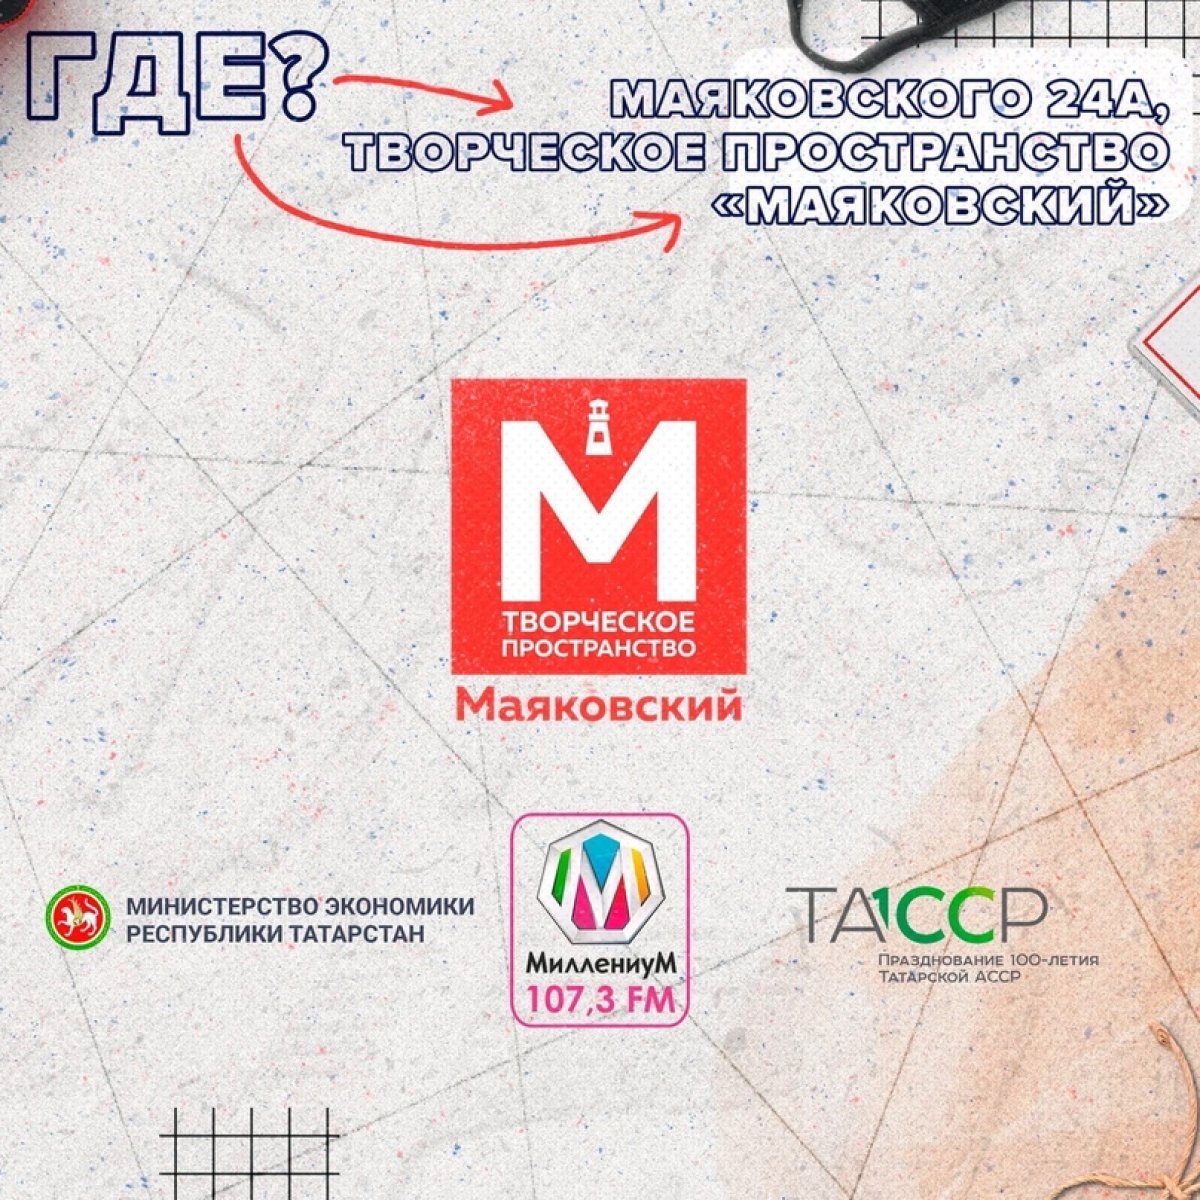 22-23 августа в Творческом пространстве «Маяковский» пройдёт долгожданный «StudMarket» с участием локальных казанских брендов!